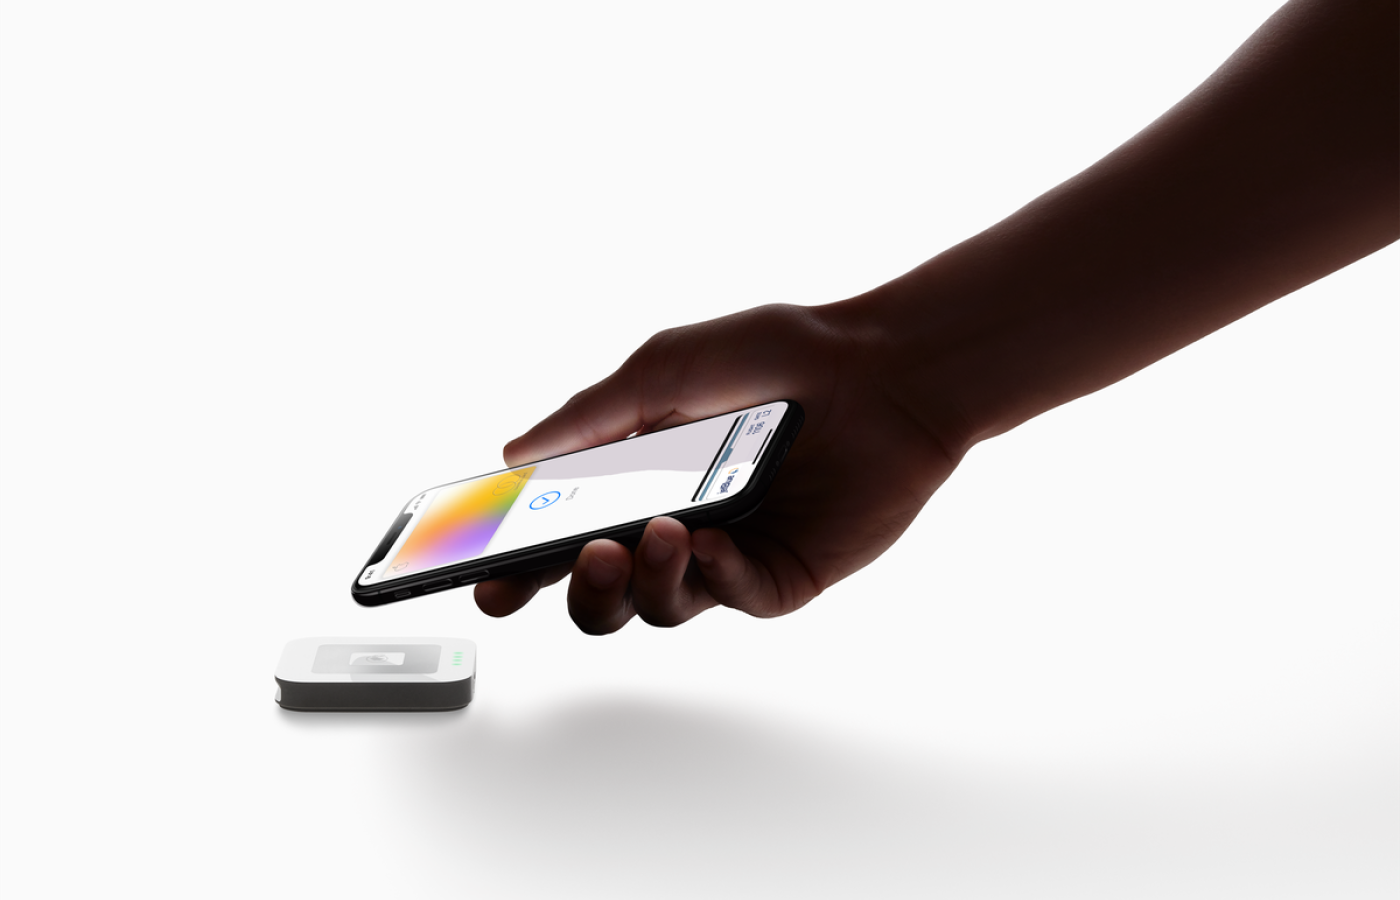 Kartę otrzymuje się w kopercie i aktywuje za pomocą NFC, przykładając do iPhone’a.